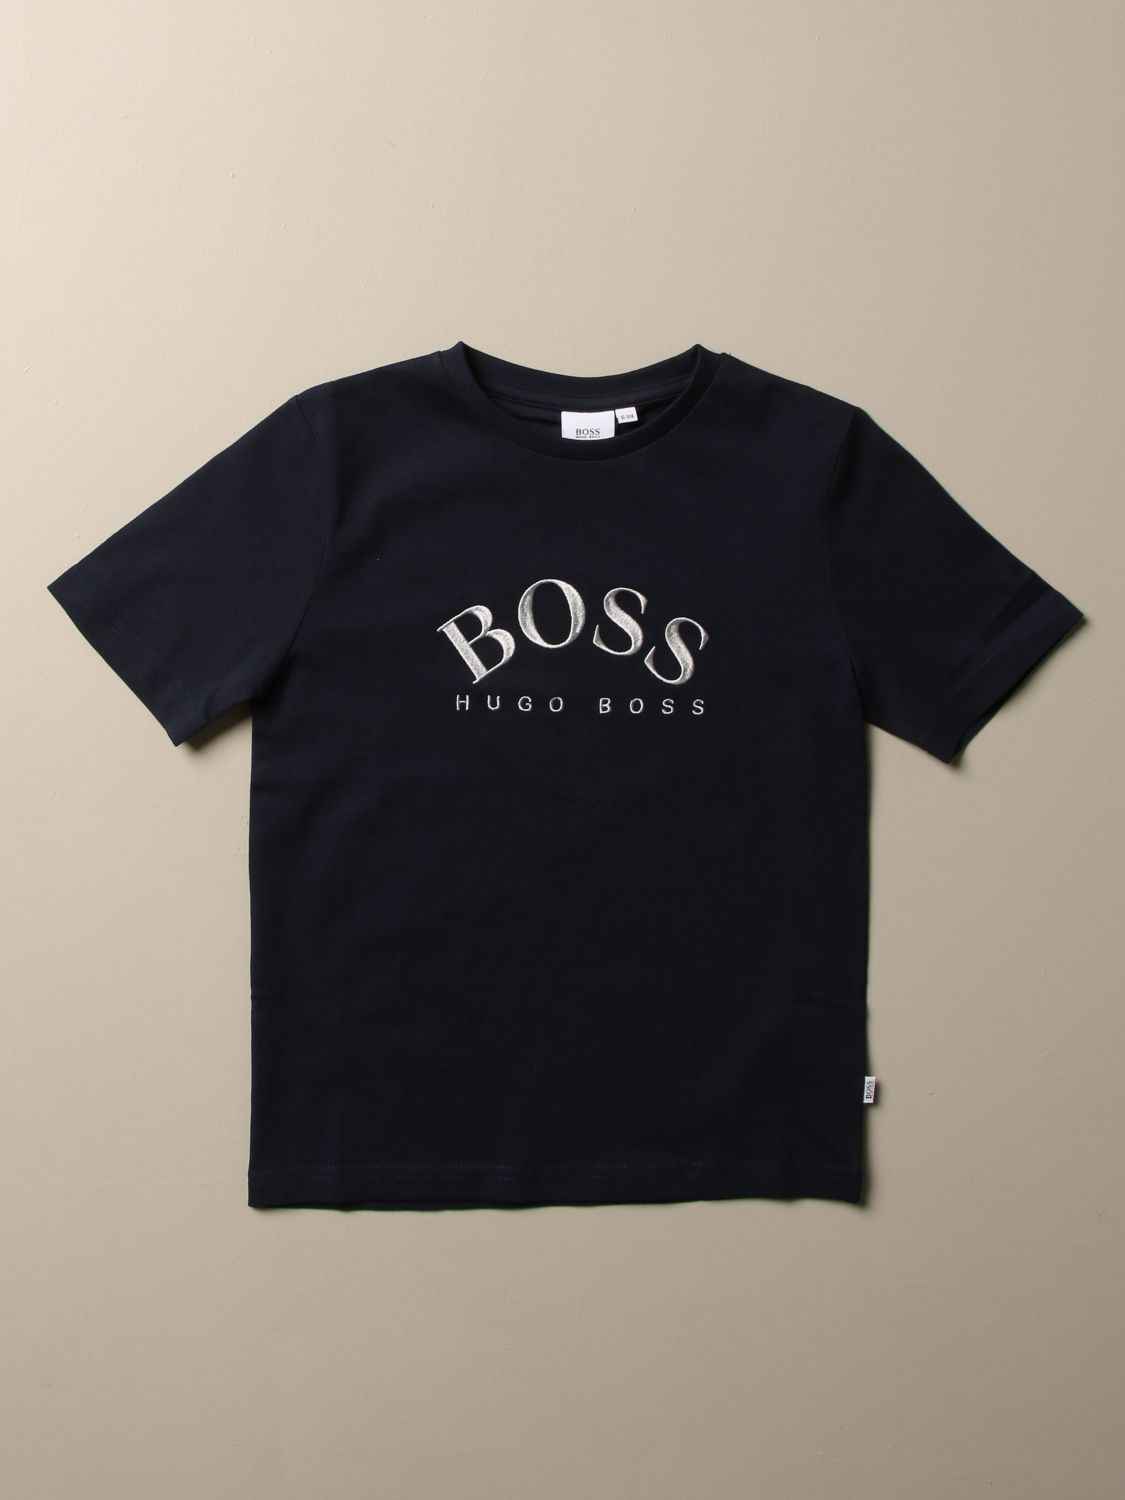 boss blue t shirt